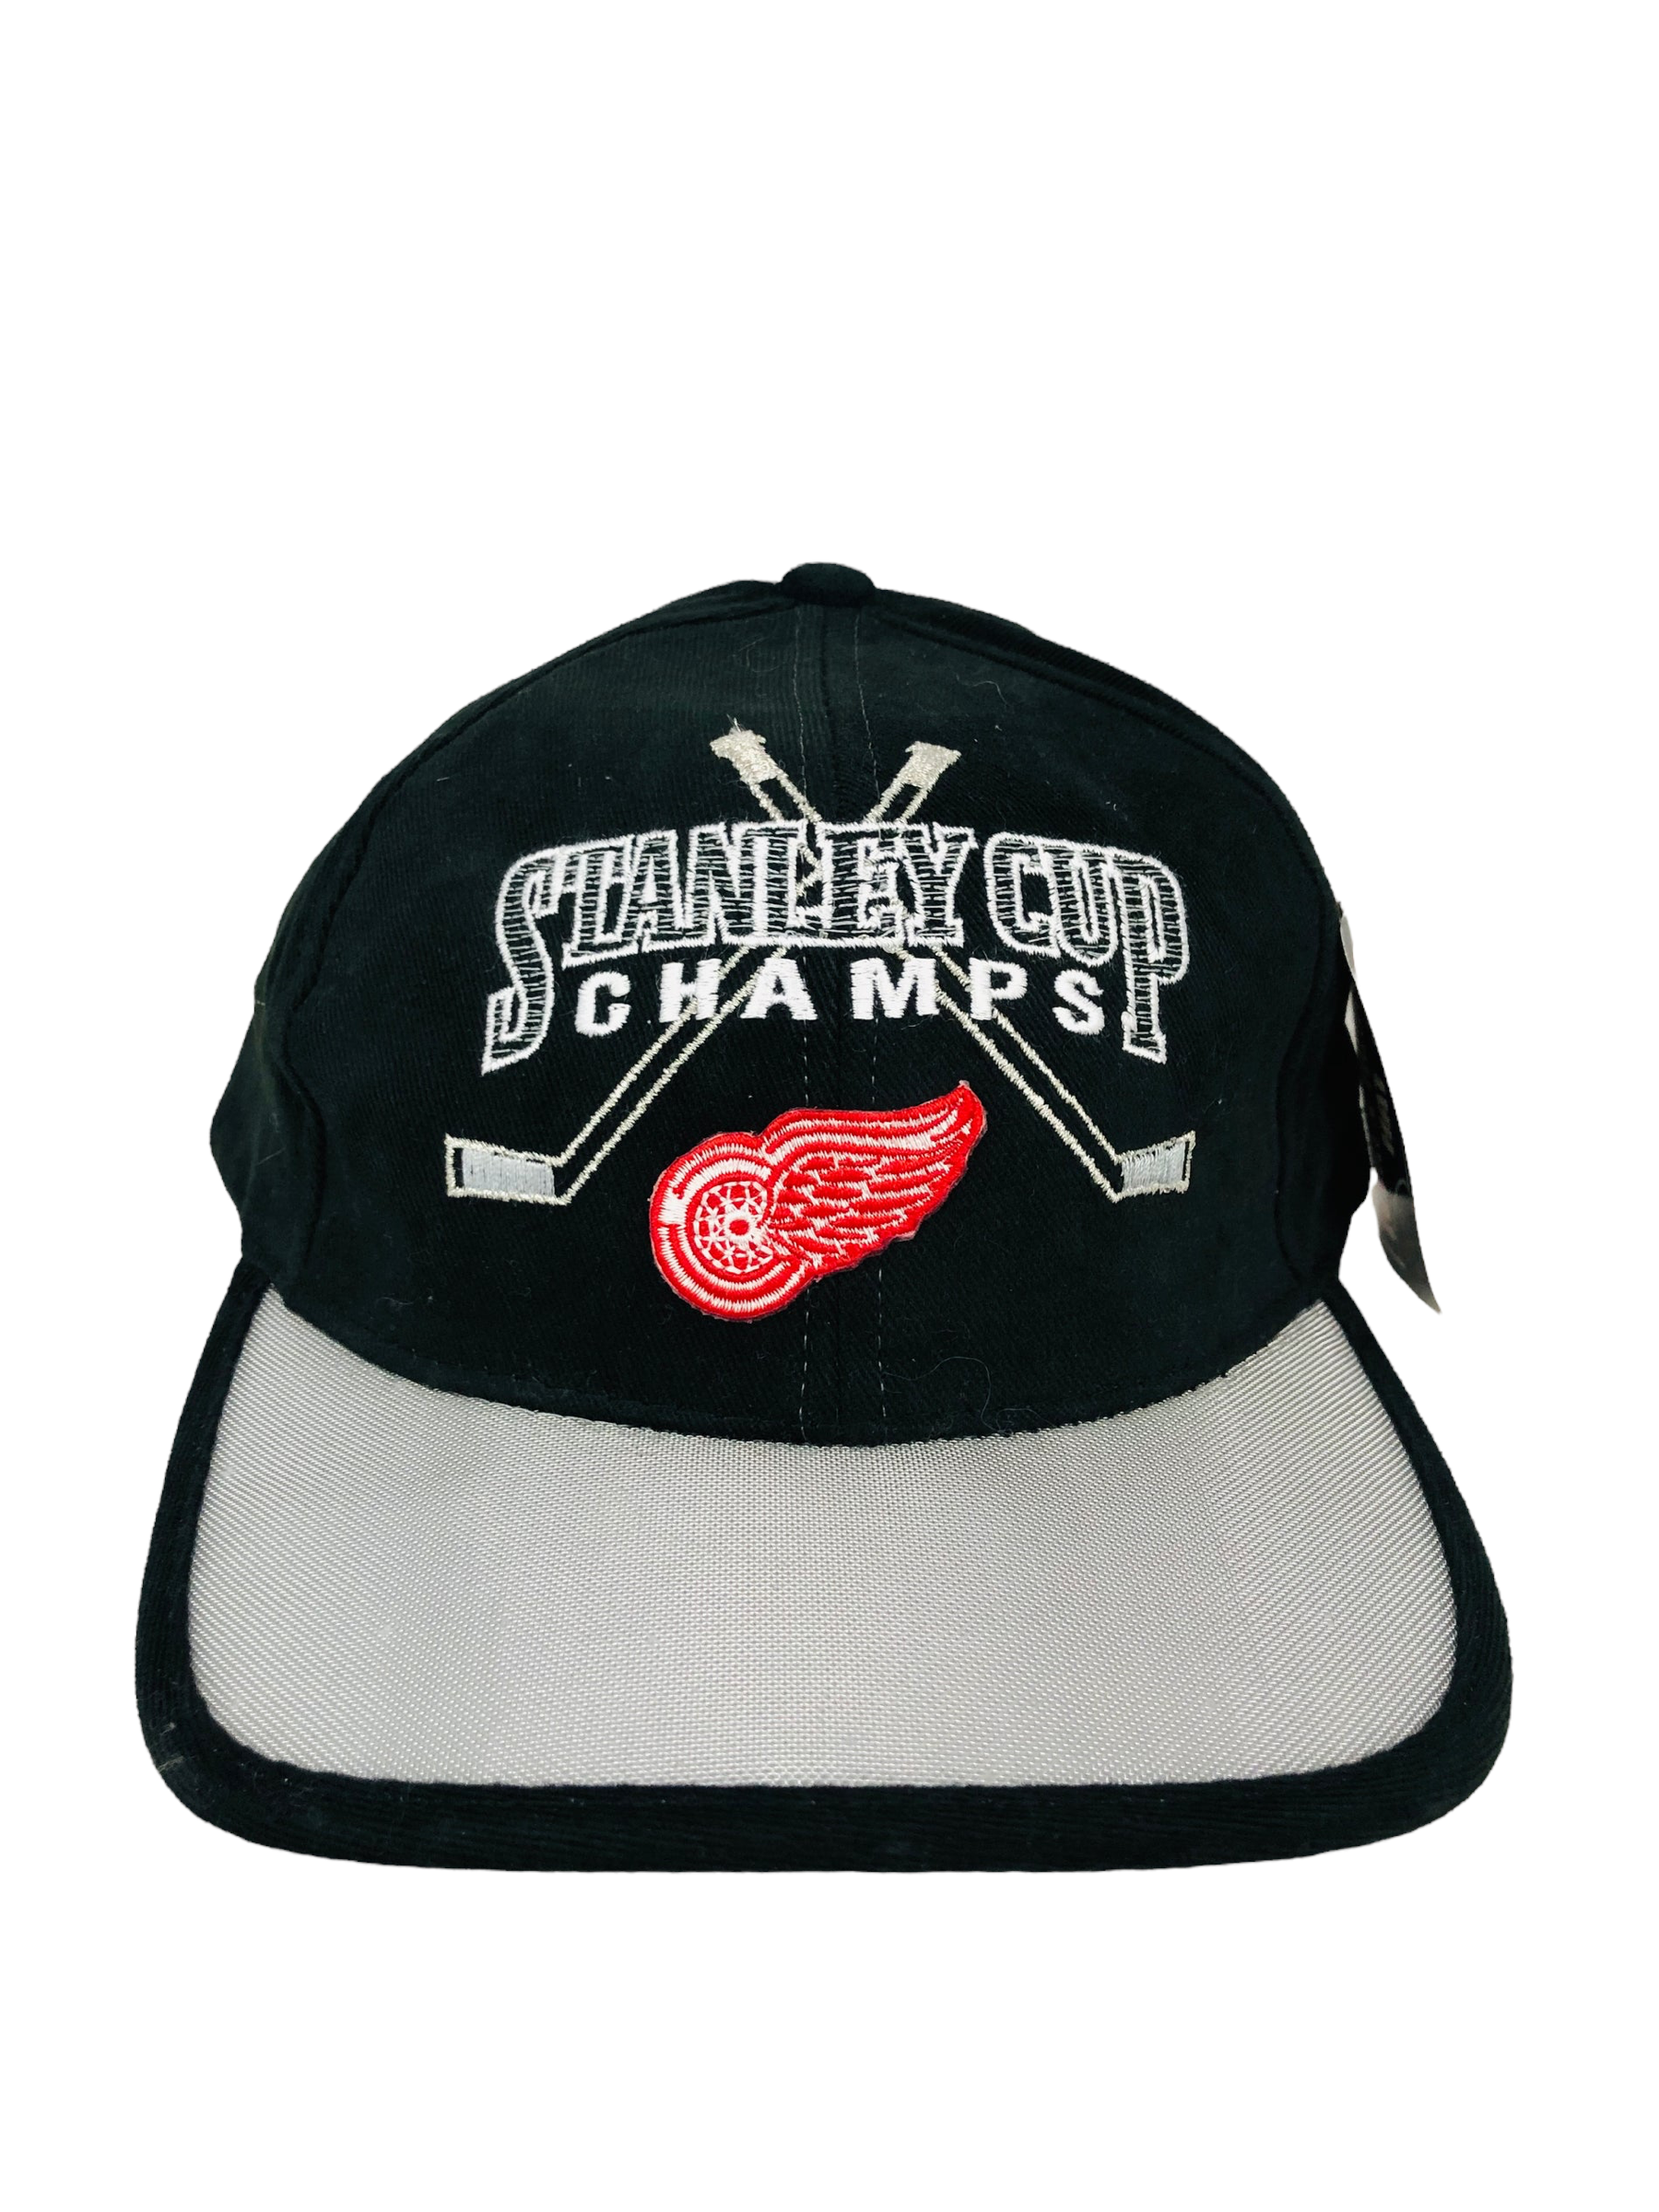 Vintage 90's Detroit Red Wings Snapback Hat 